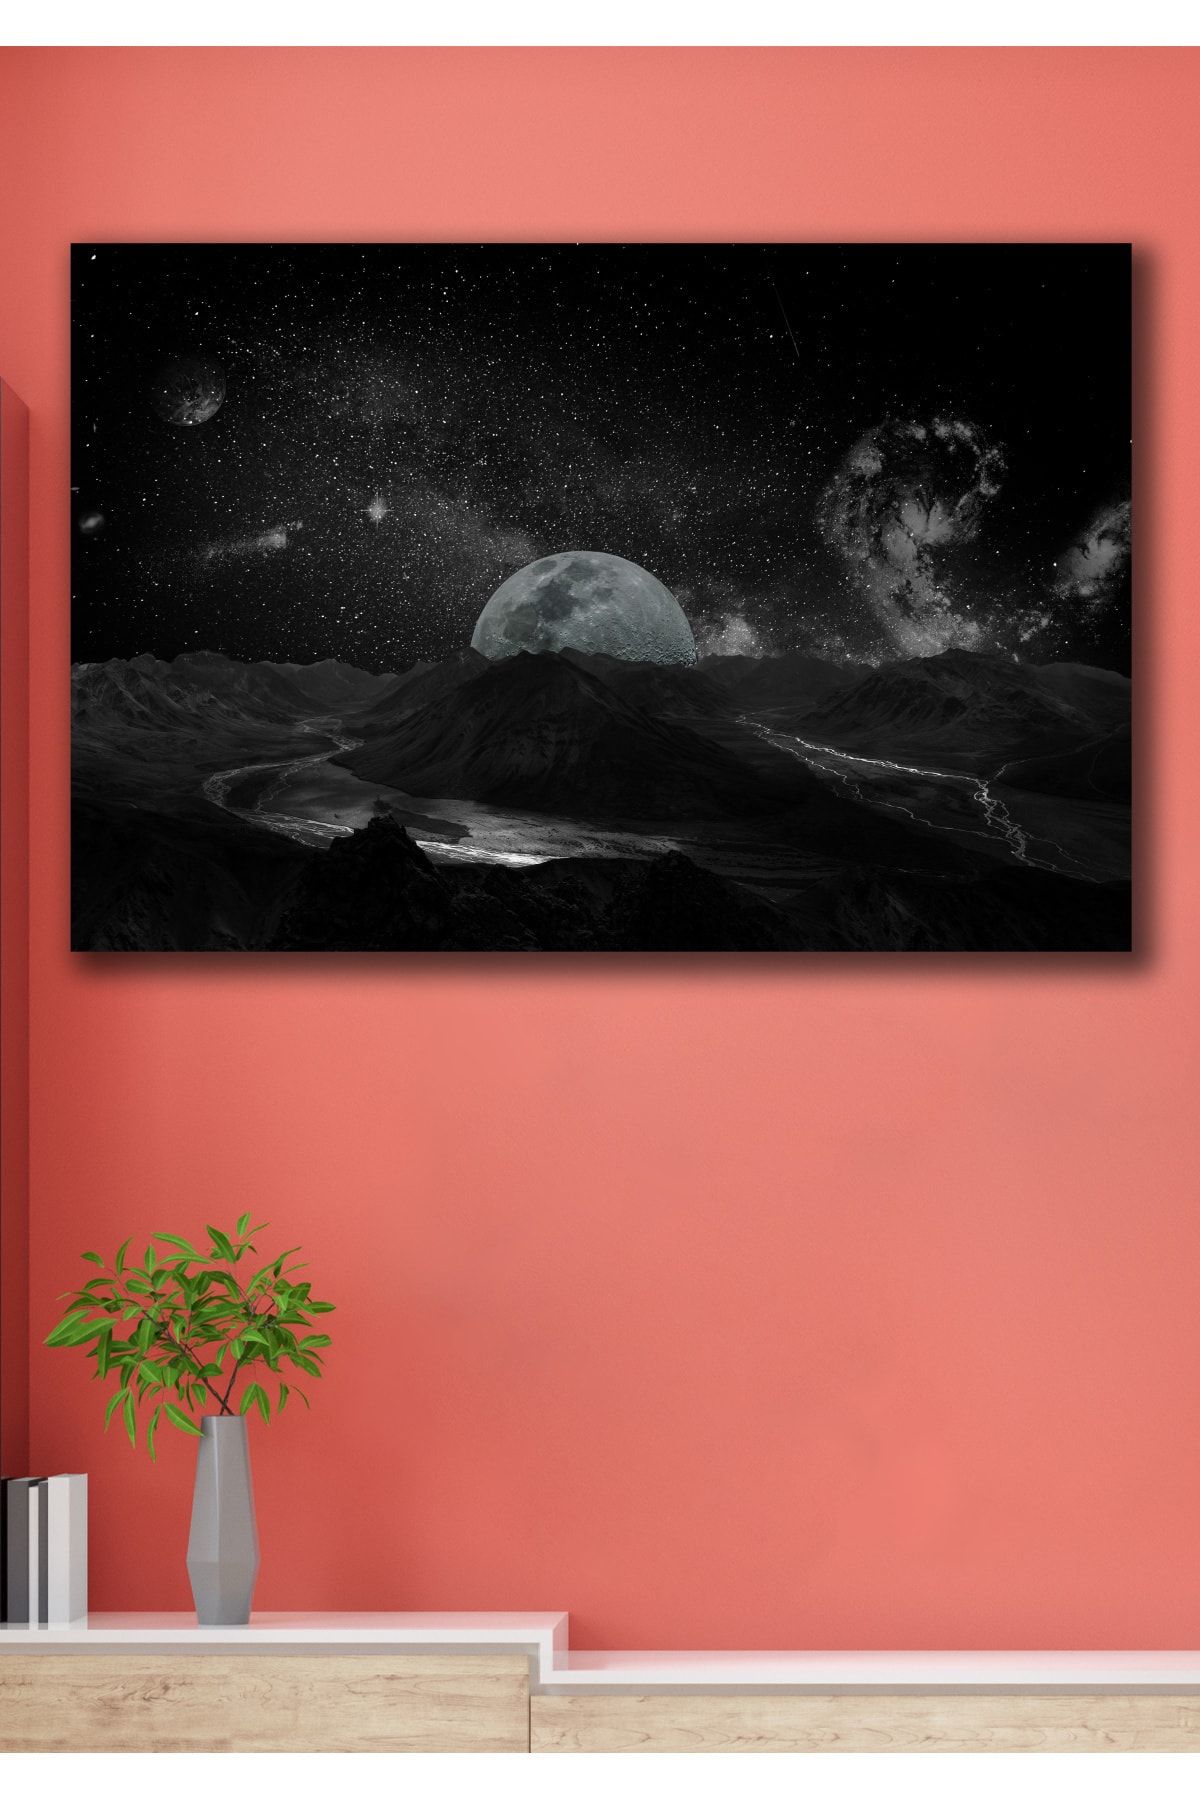 Hediyeler Kapında Galaksi Kanvas Duvar Tablo 90x130